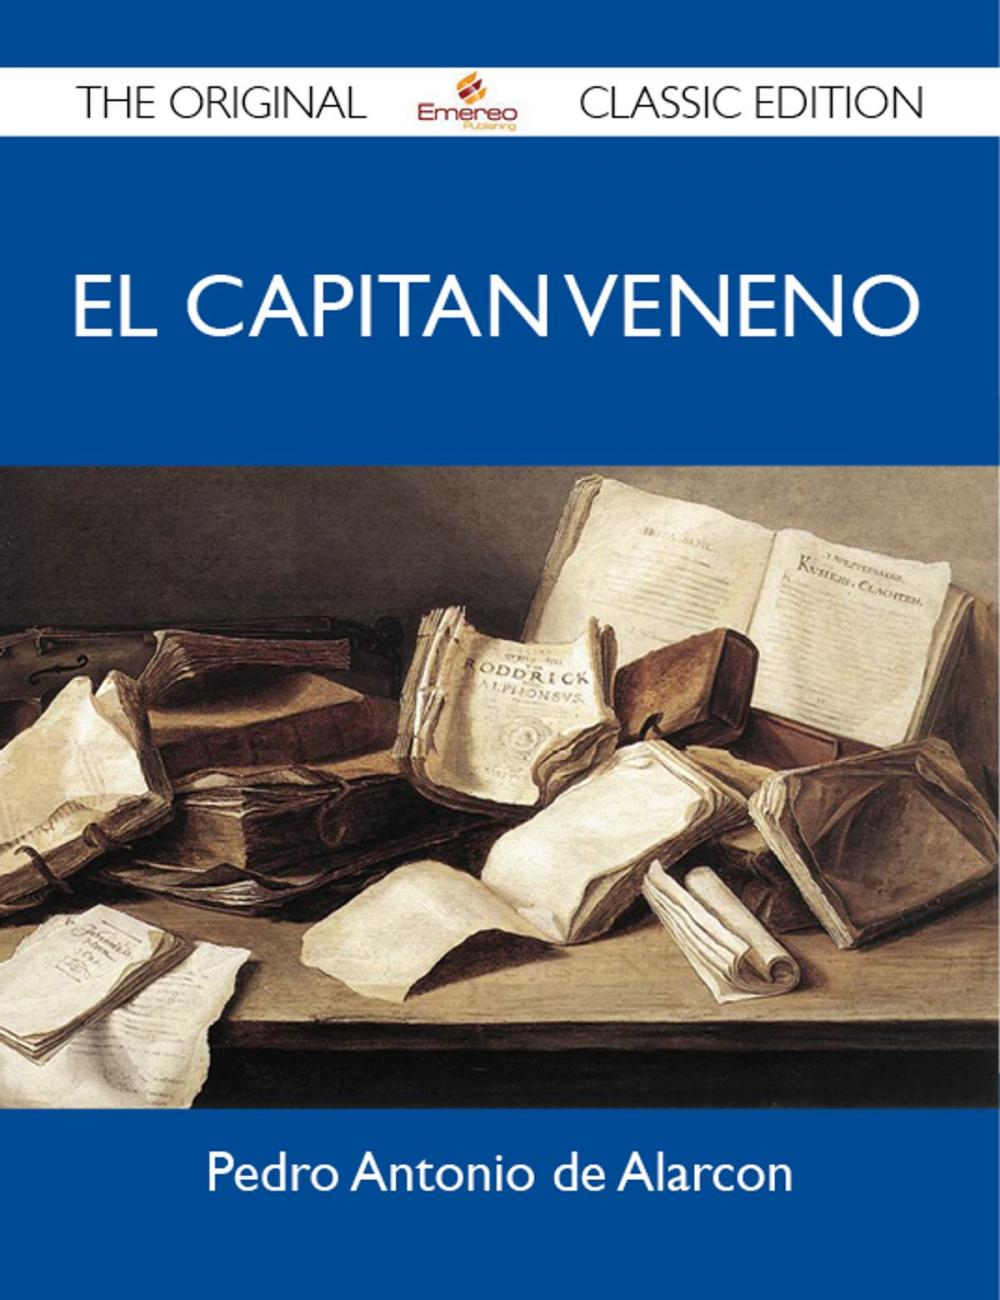 Big bigCover of El Capitan Veneno - The Original Classic Edition